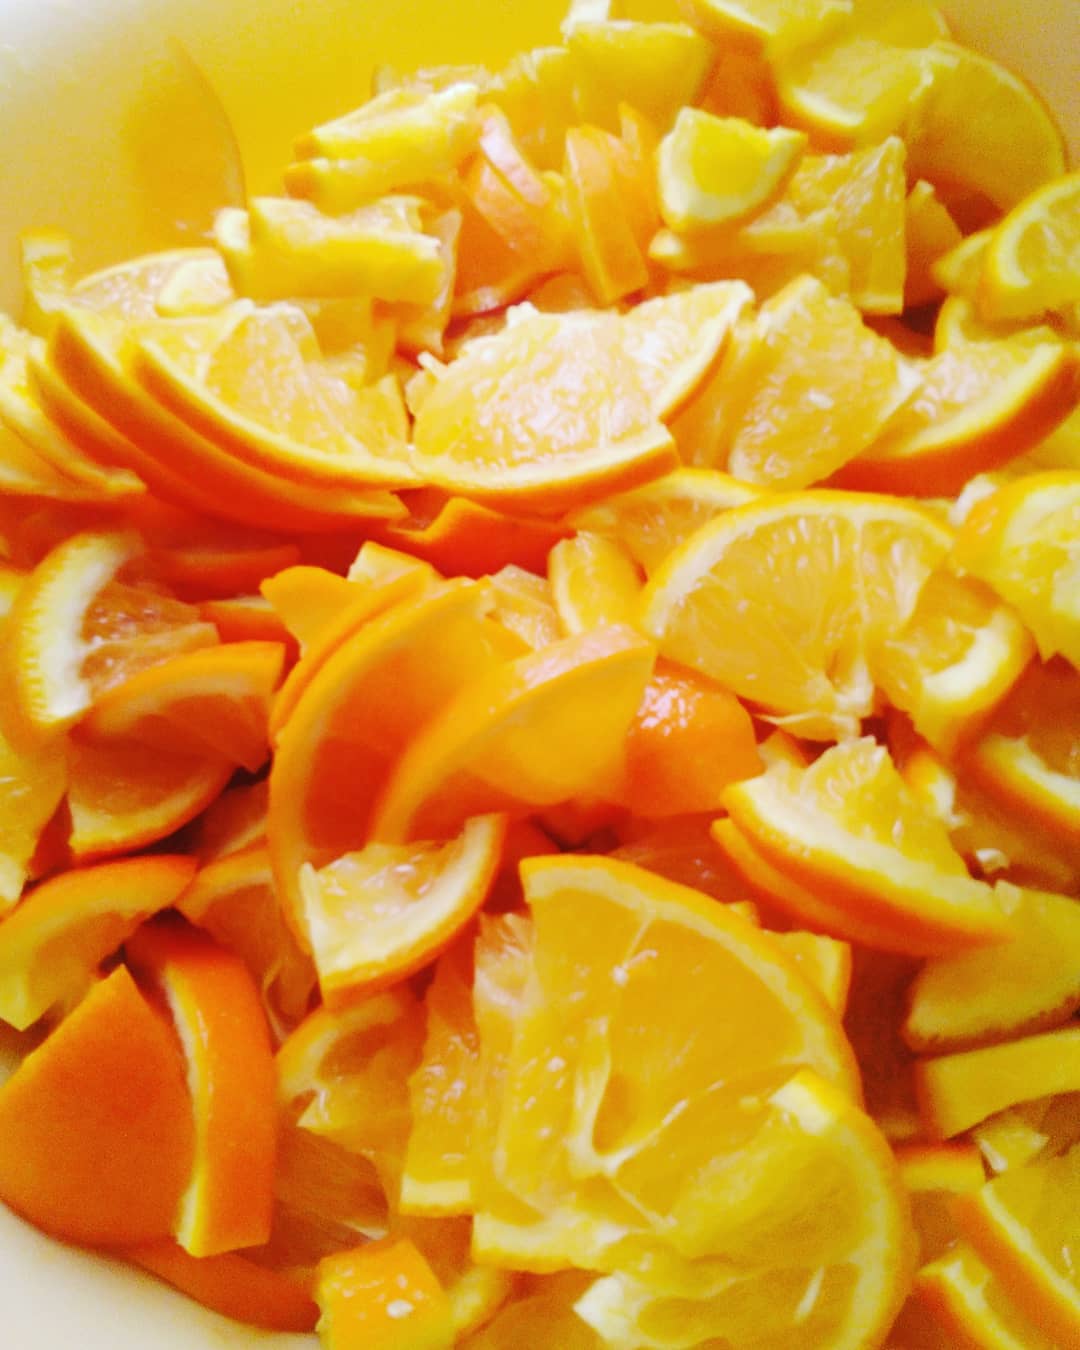 Апельсиновая Диета 2